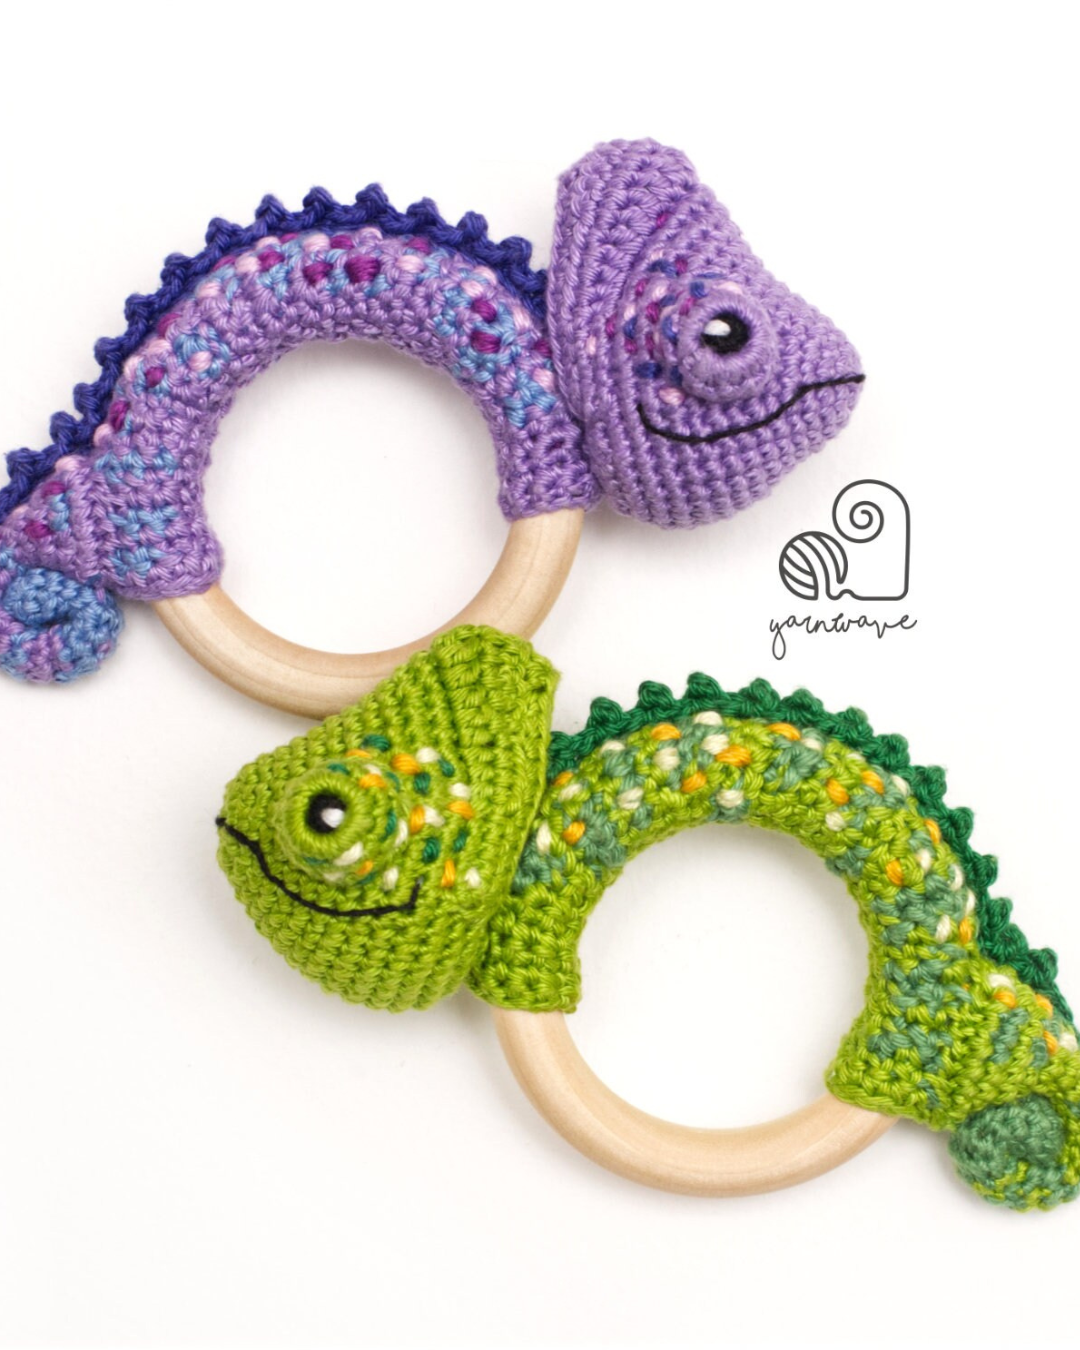 two crochet chameleon baby rattles